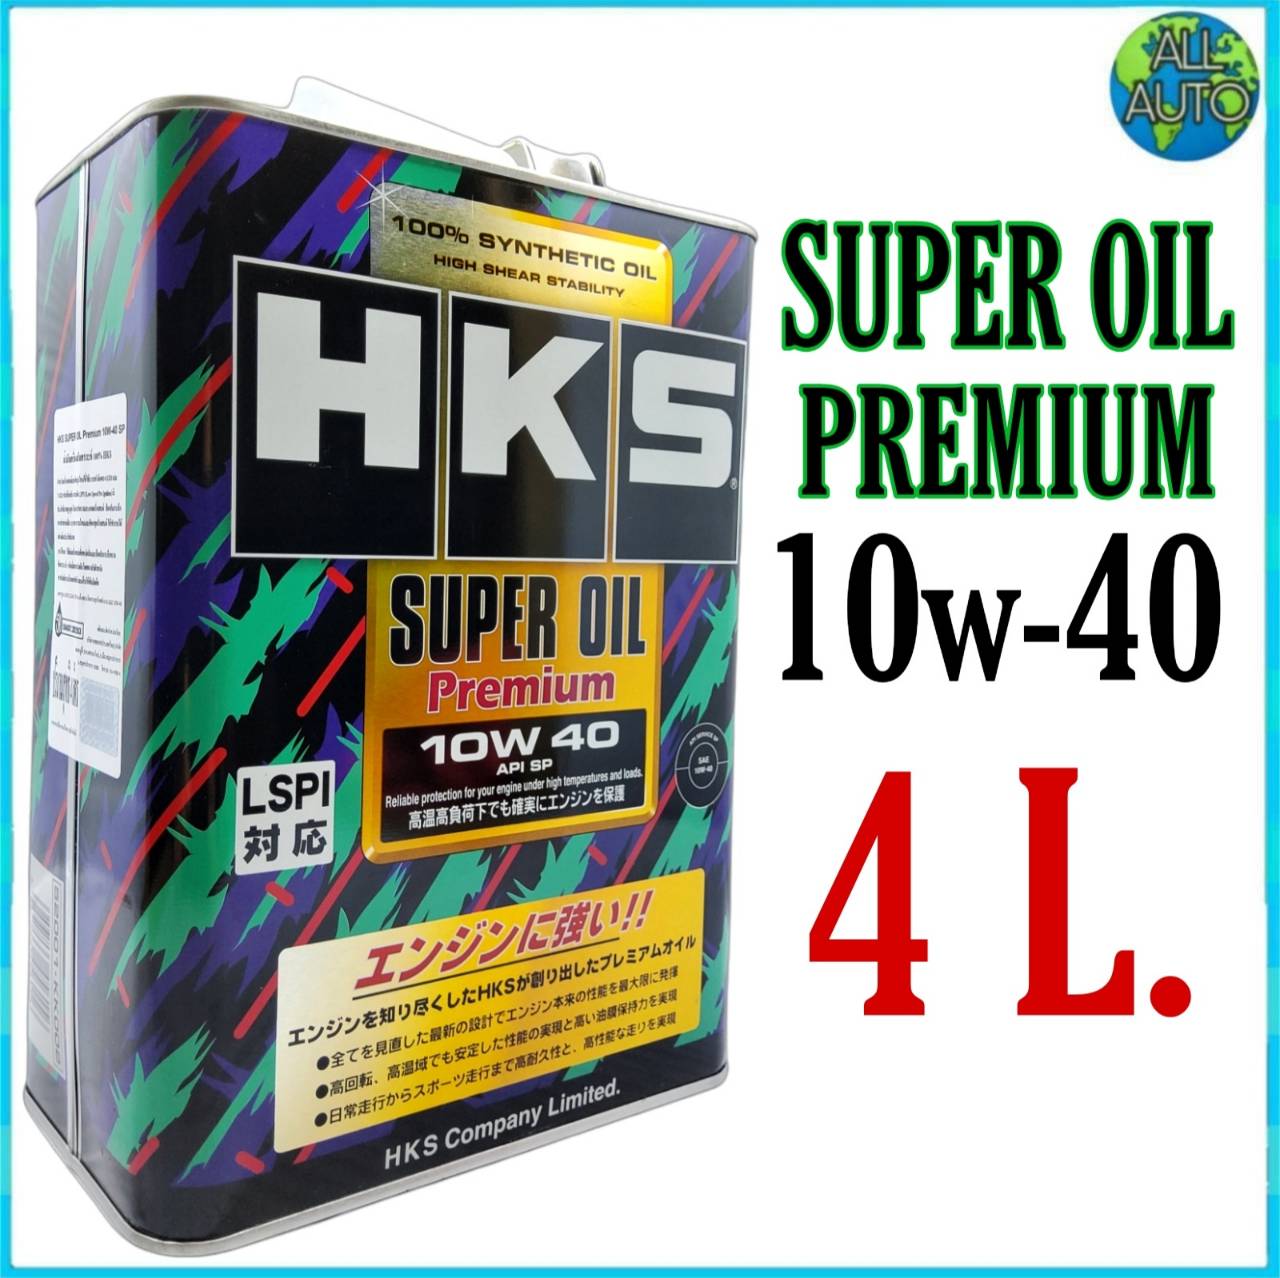 HKS エンジンオイル スーパーオイル プレミアム 10W40 5L (4L 1L) API SP 規格品 52001-AK142 AK141  (213171072S1 専門店 - オイル、バッテリーメンテナンス用品 - オイル